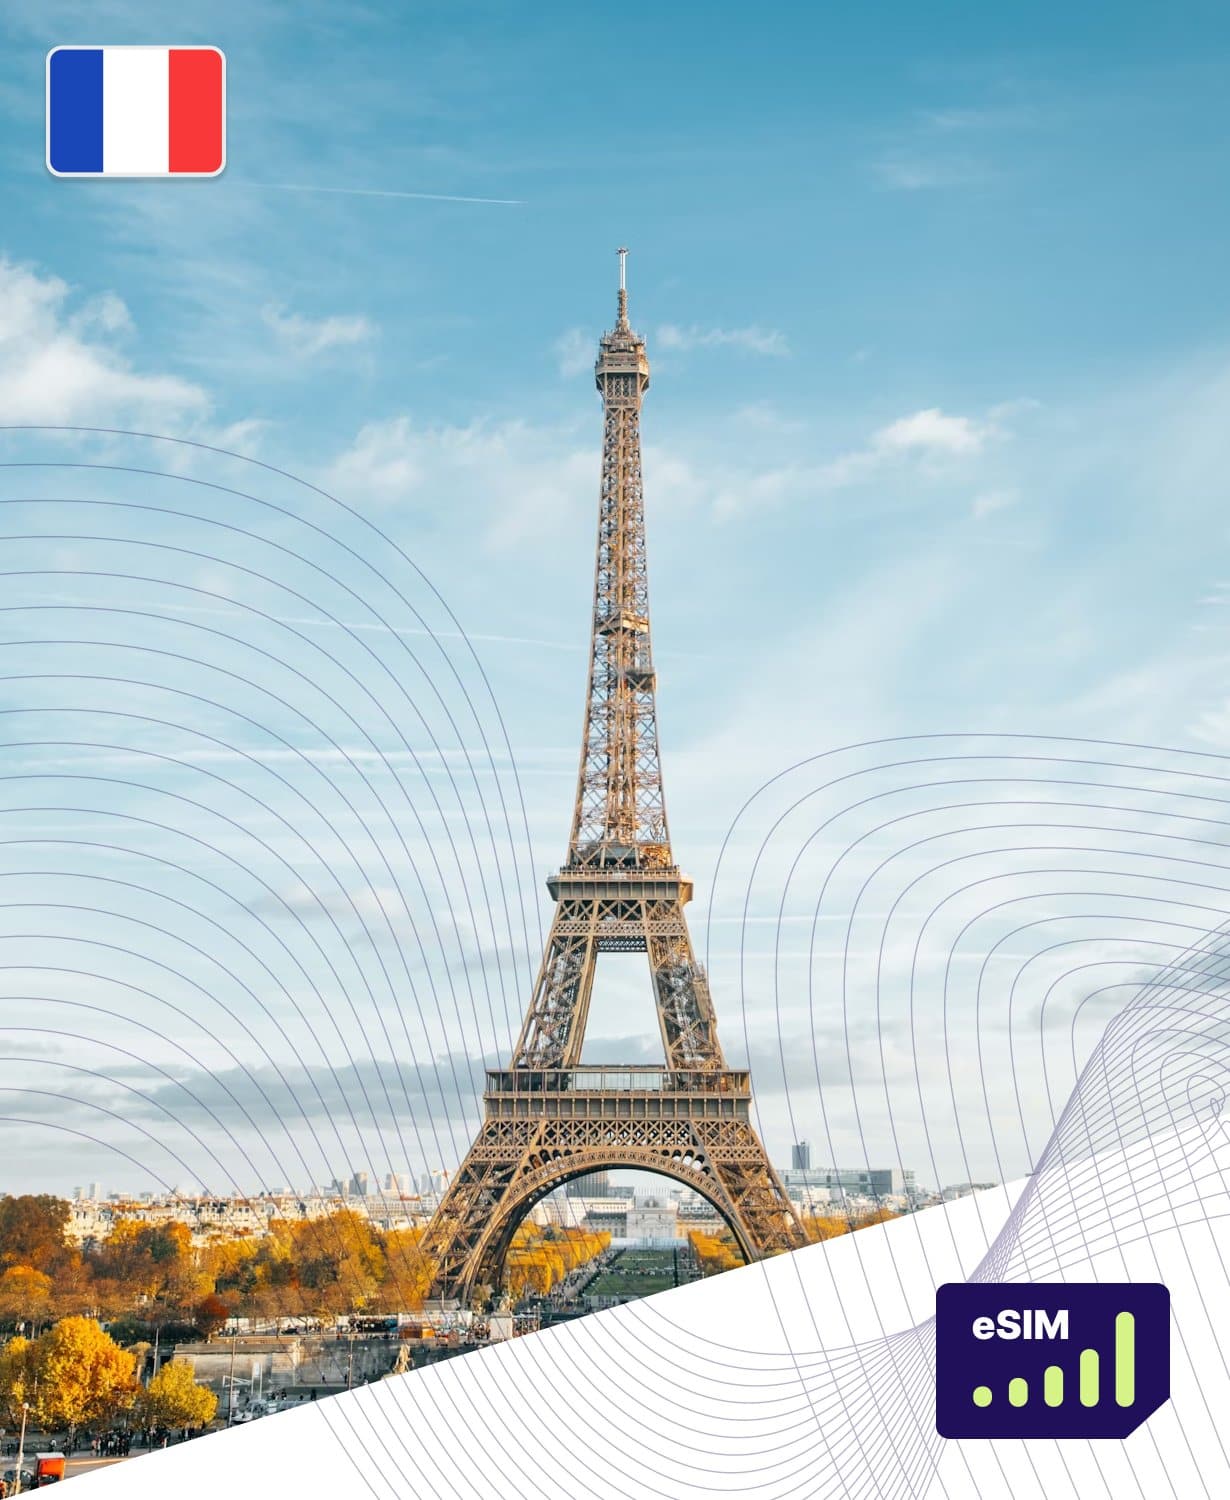 France 4G/5G eSIM Data Plans for Seamless Travel